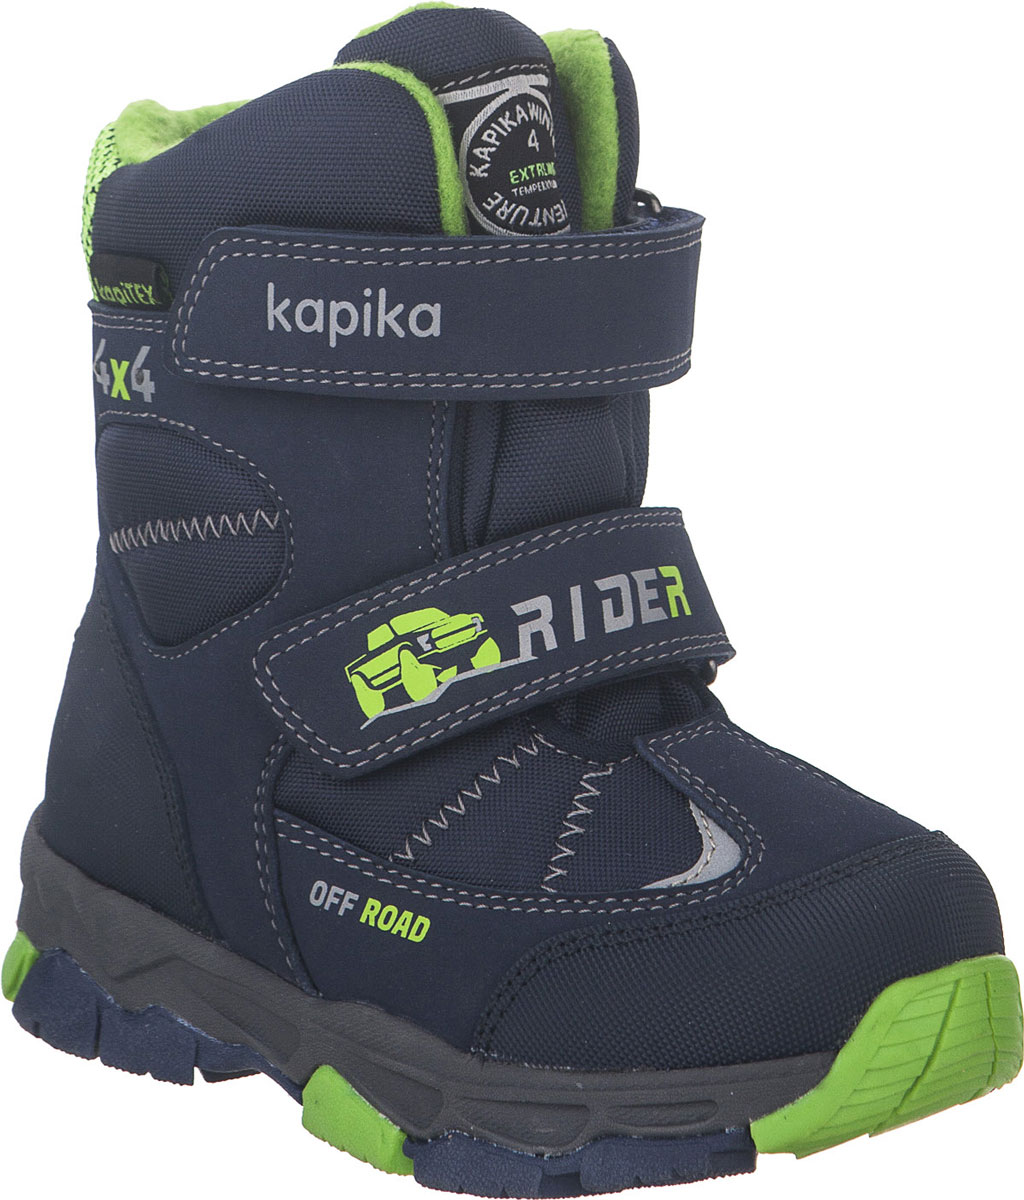 Ботинки для мальчика Kapika, цвет: темно-синий, салатовый. 42215-2. Размер 31